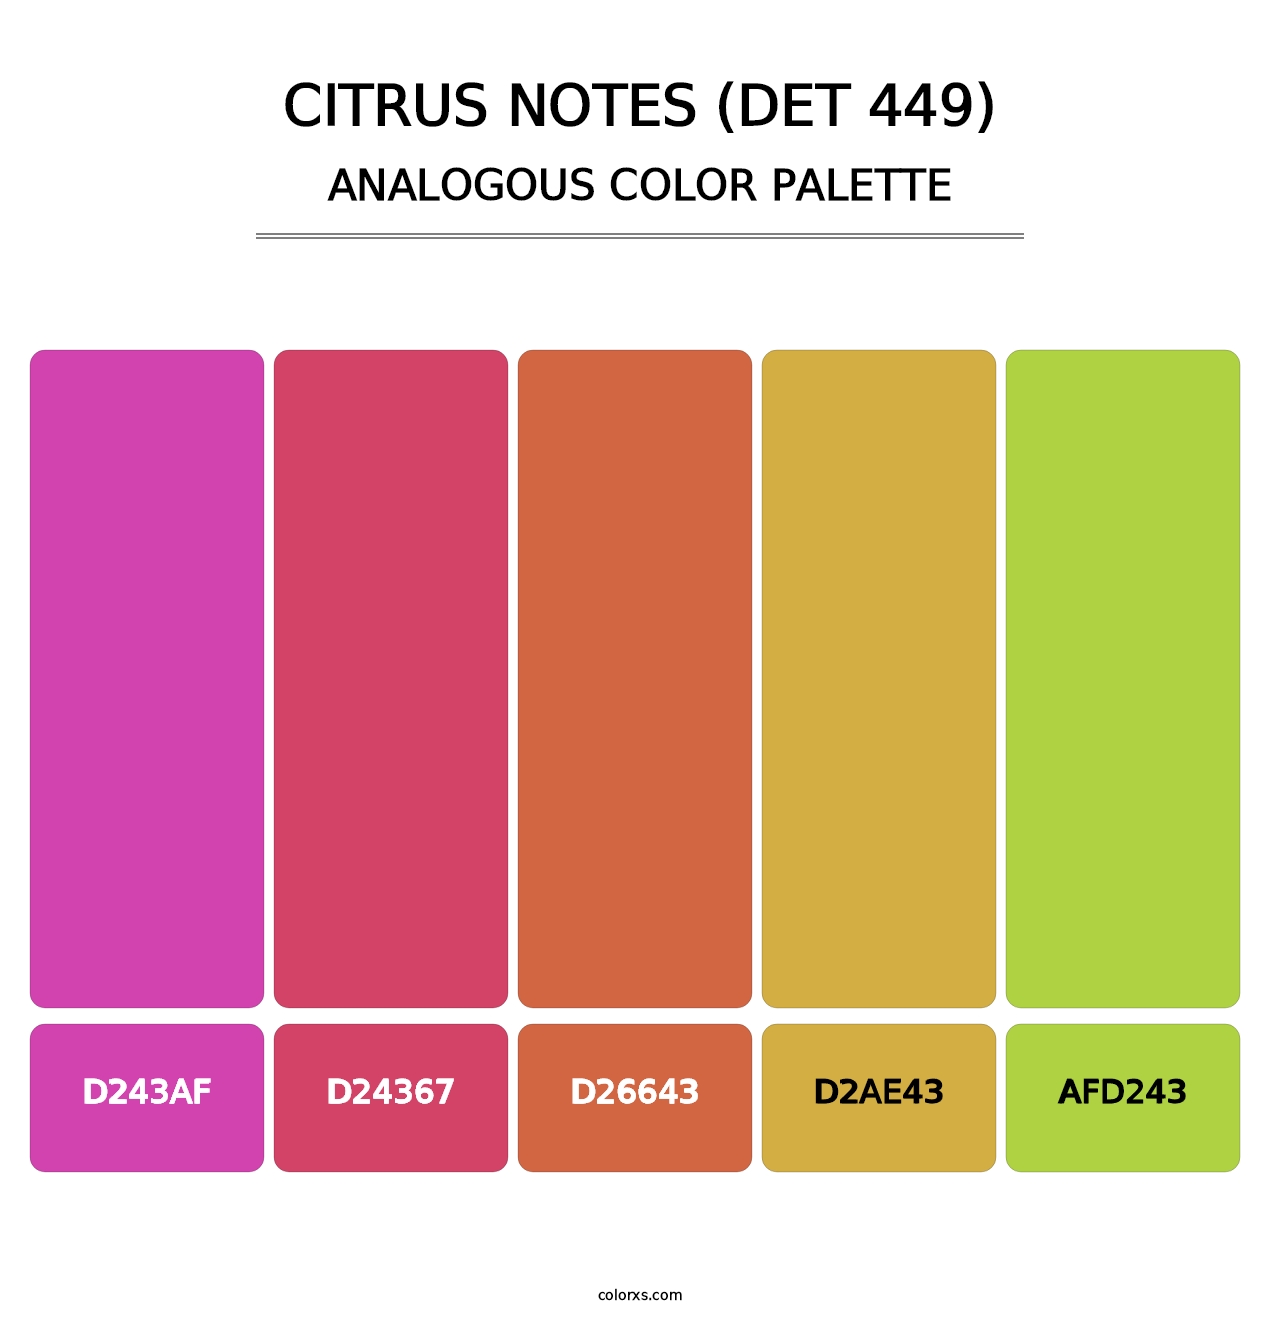 Citrus Notes (DET 449) - Analogous Color Palette